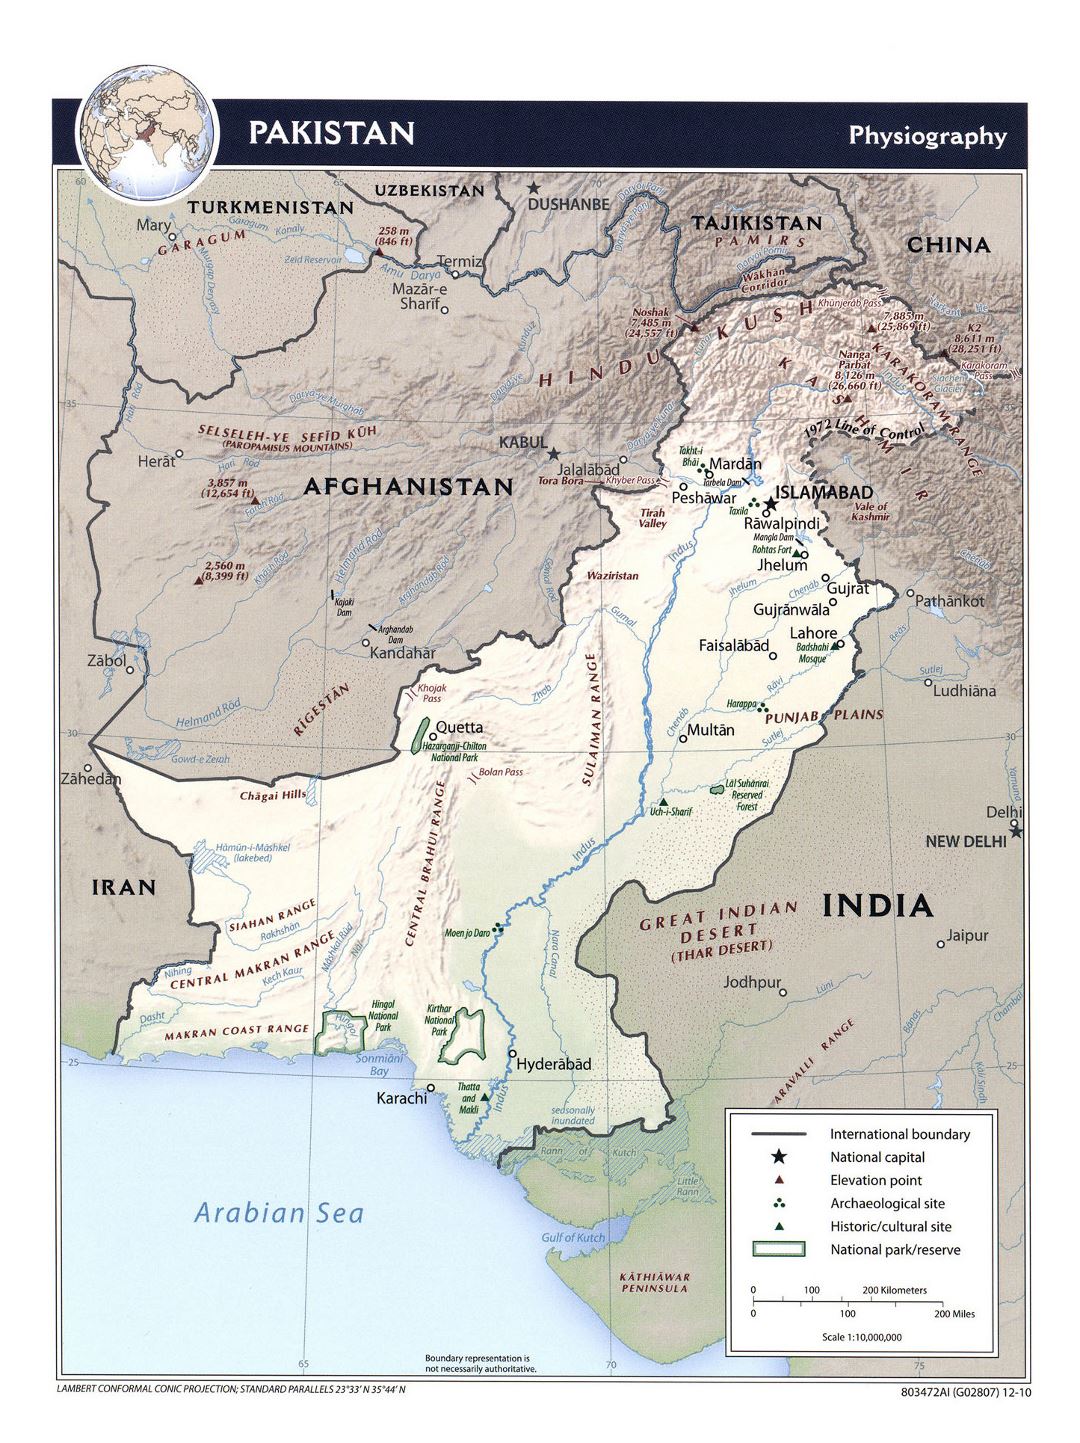 Детальная физиографическая карта Пакистана - 2010